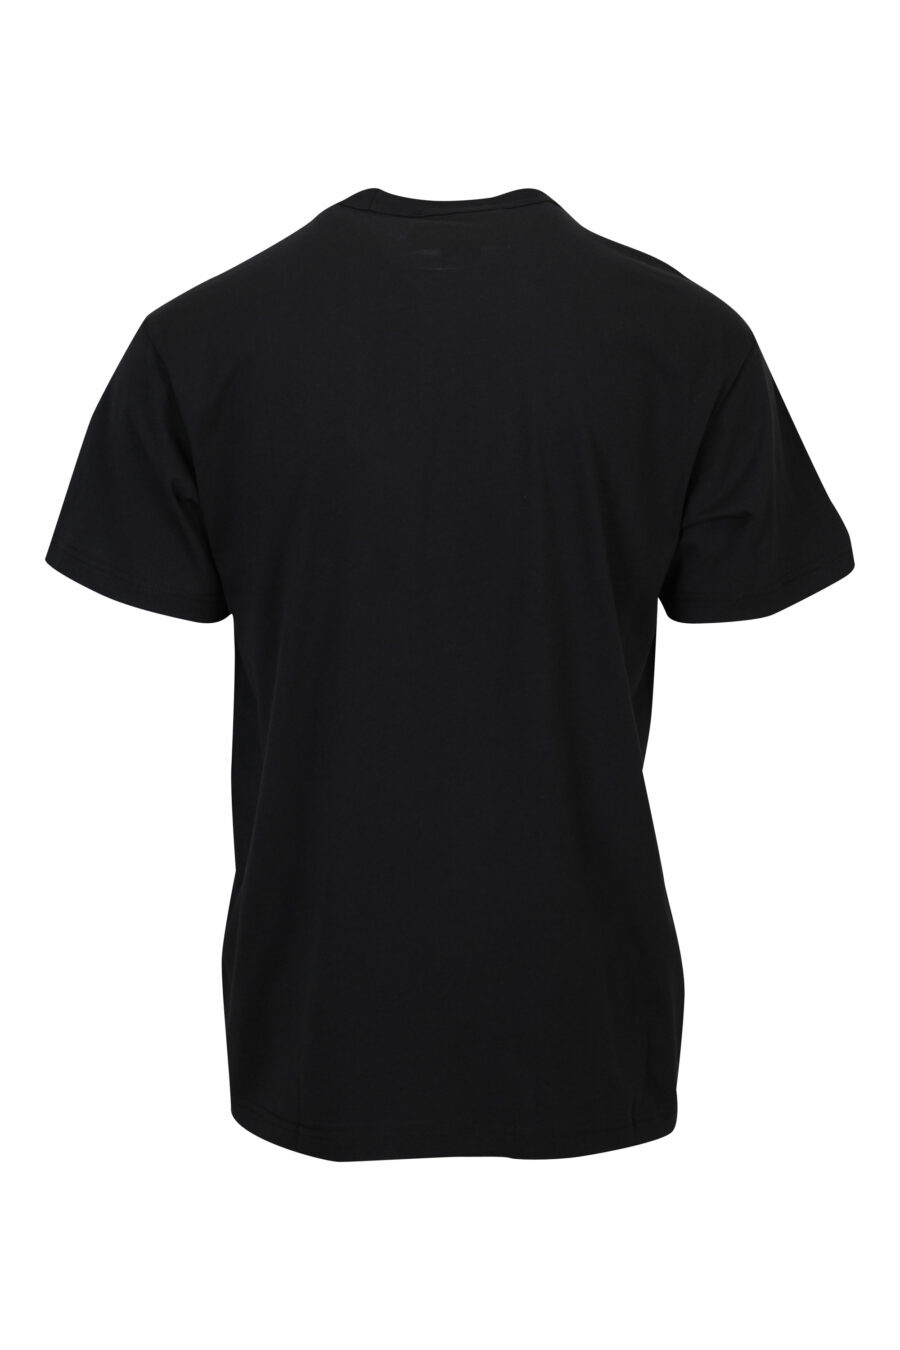 Camiseta negra con maxilogo barroco centrado - 8052019589863 1